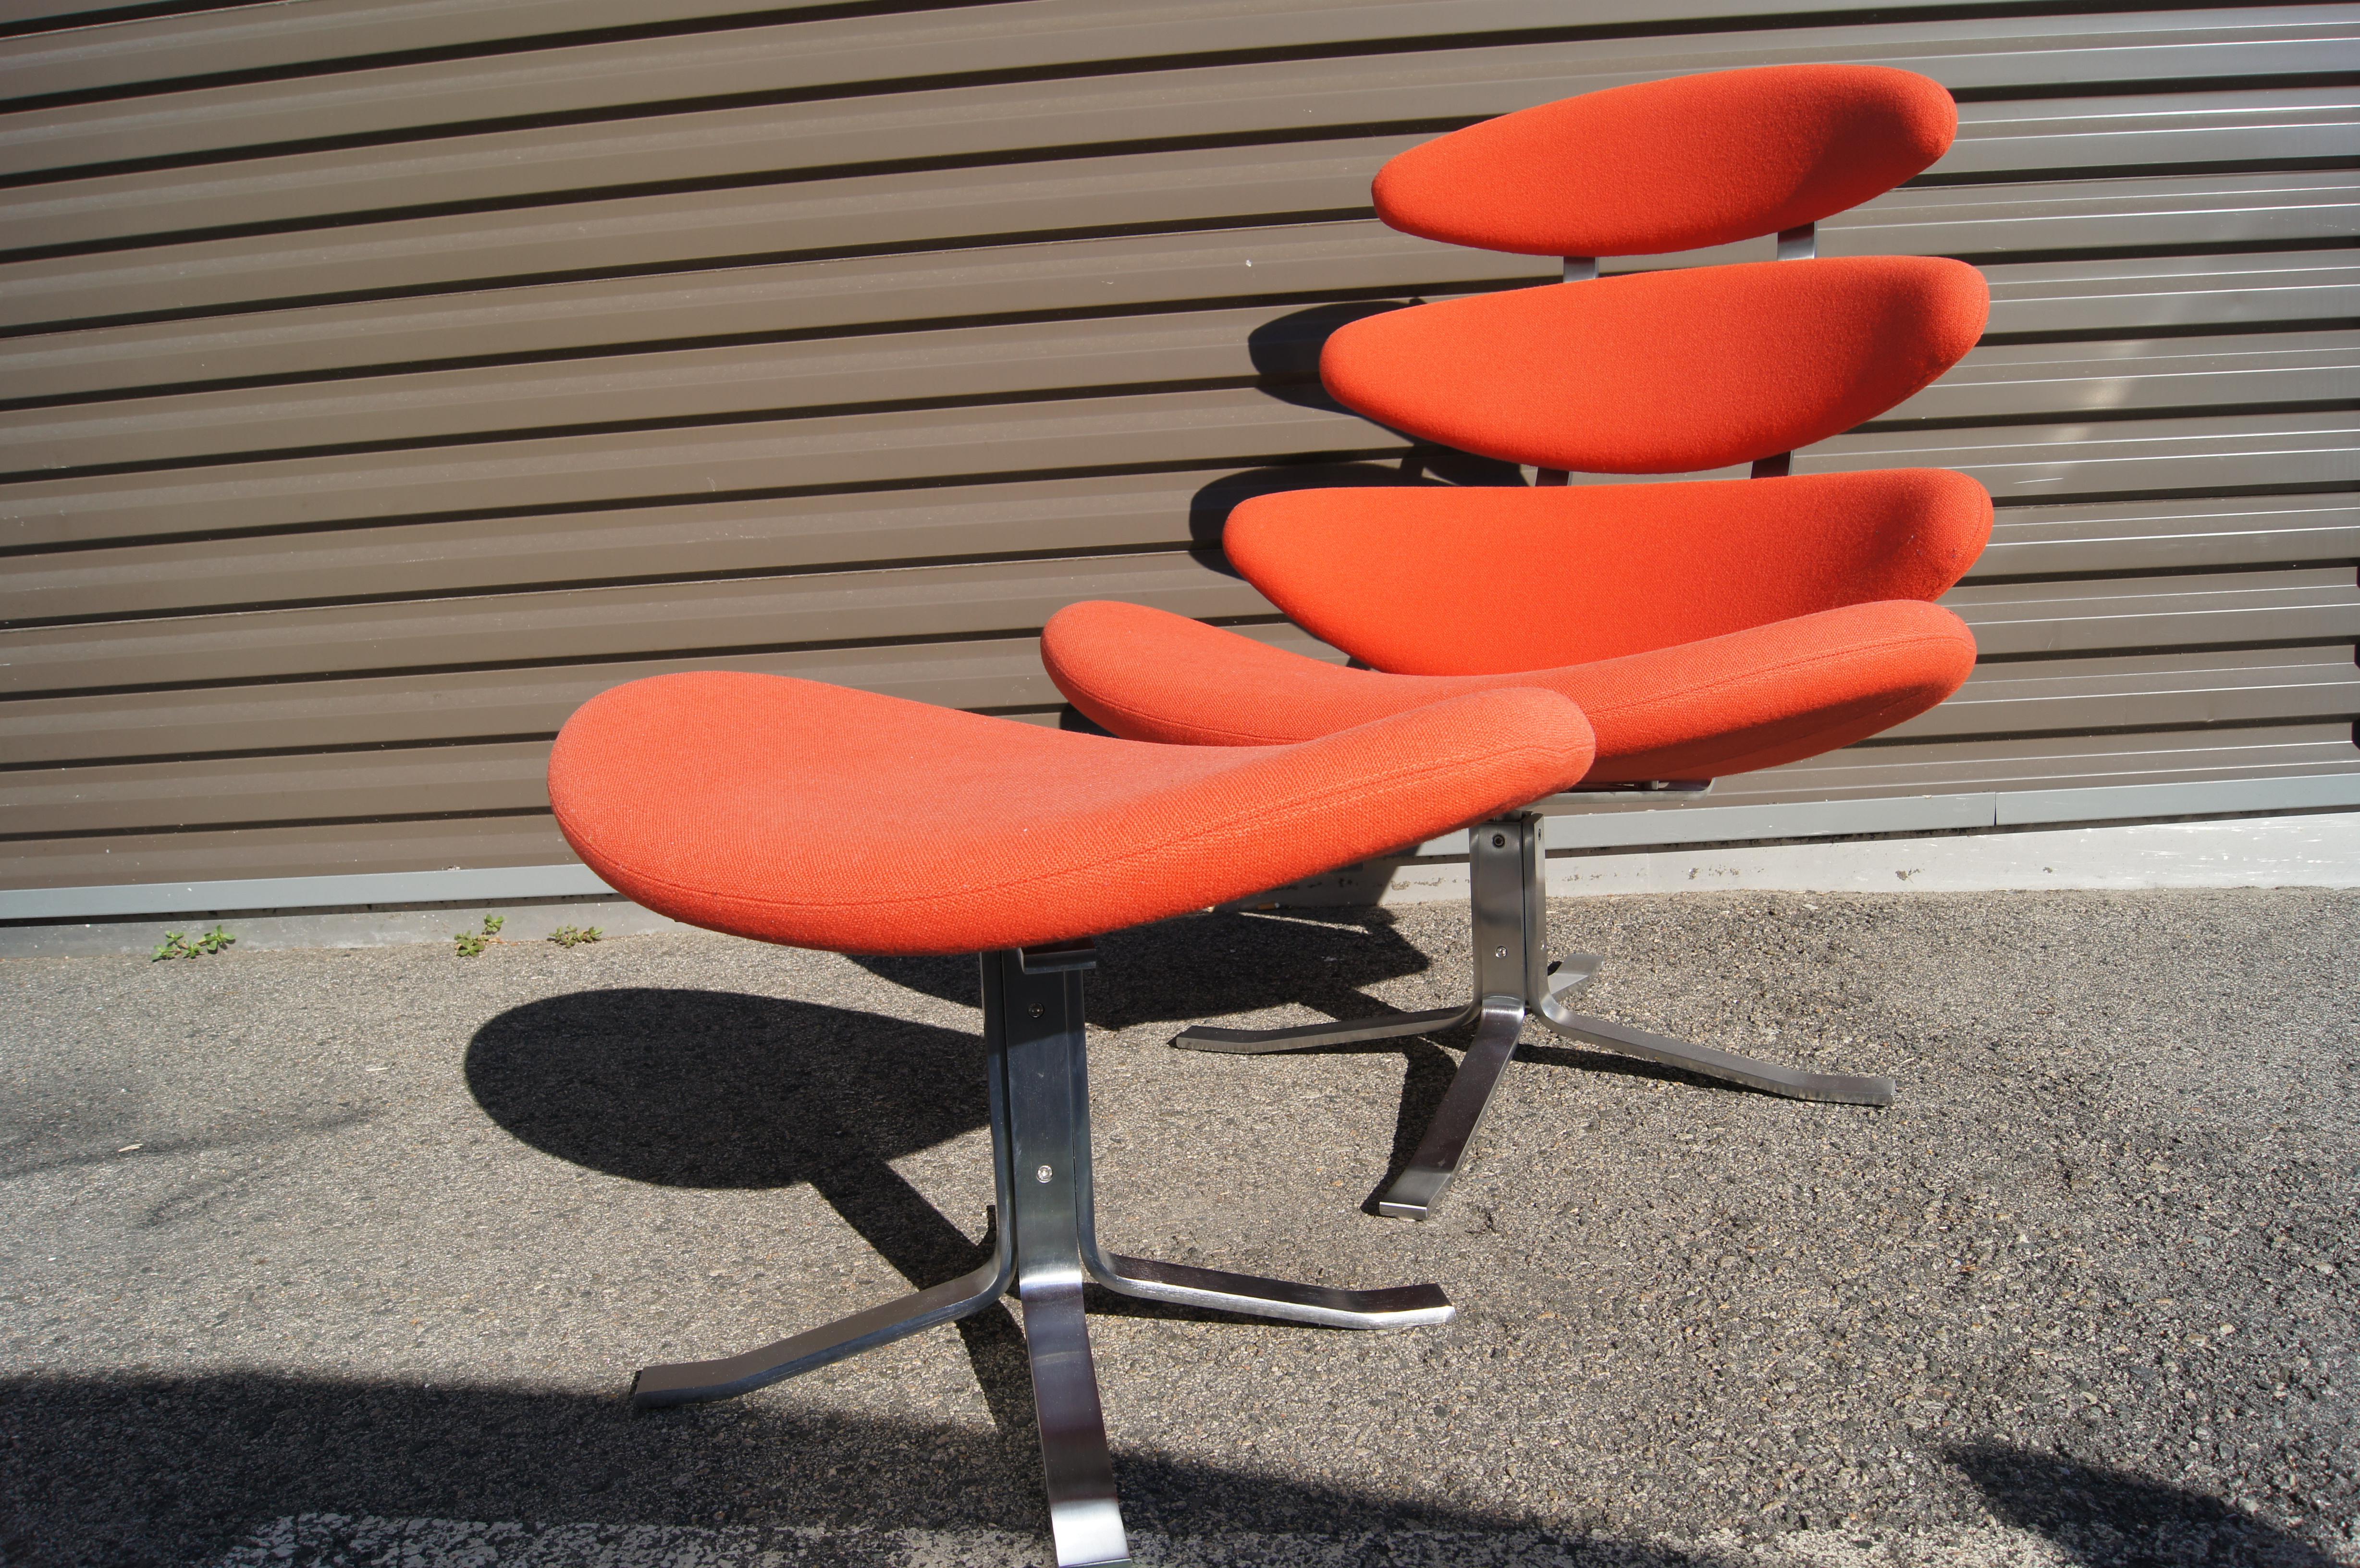 Poul M. Volther entwarf 1964 den klassischen Corona Chair für Erik Jørgensen. Vier gepolsterte Kissen, hier in einem leuchtenden Orange, erheben sich auf einem drehbaren Edelstahlrahmen und schaffen so einen Lounge-Sessel, der sowohl bequem als auch